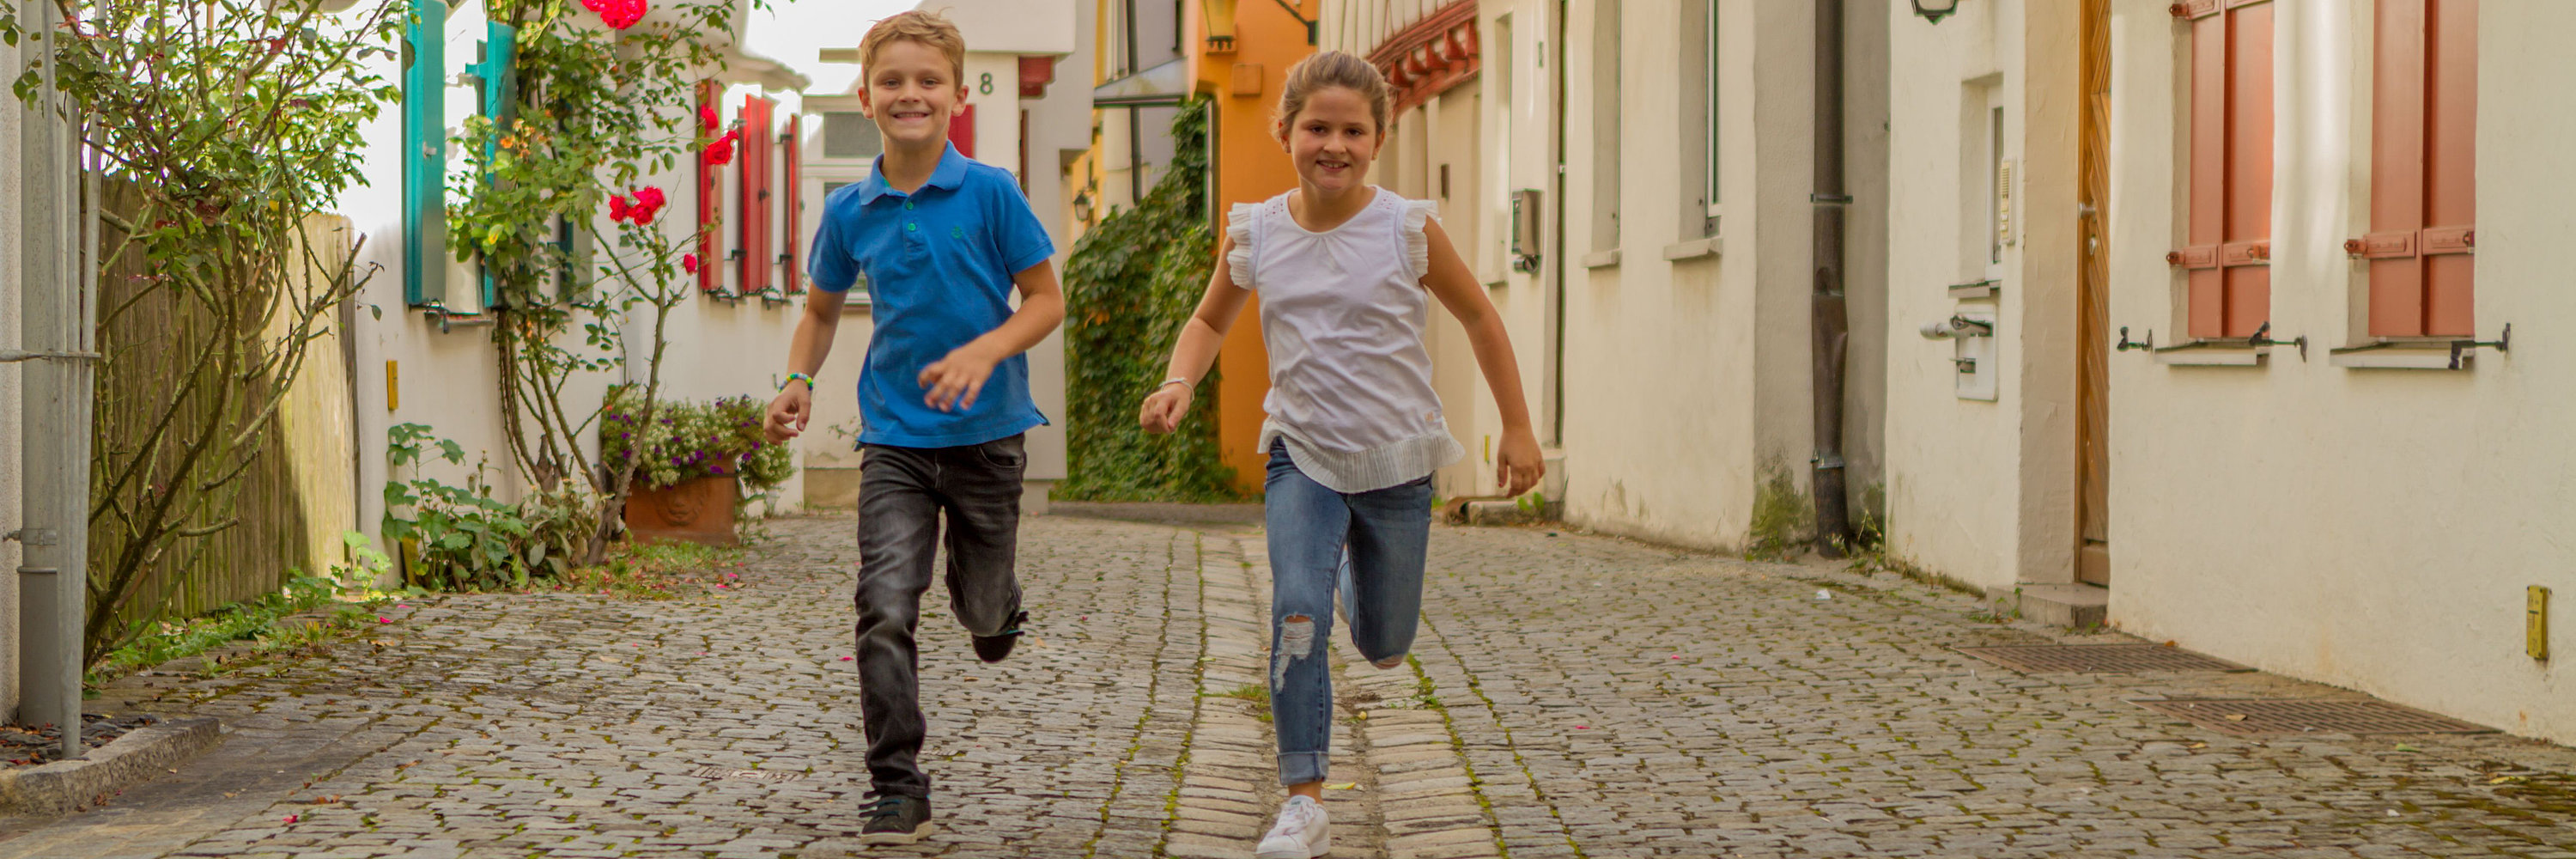 Kinder rennen. Foto: Philipp Röger für die Stadt Günzburg